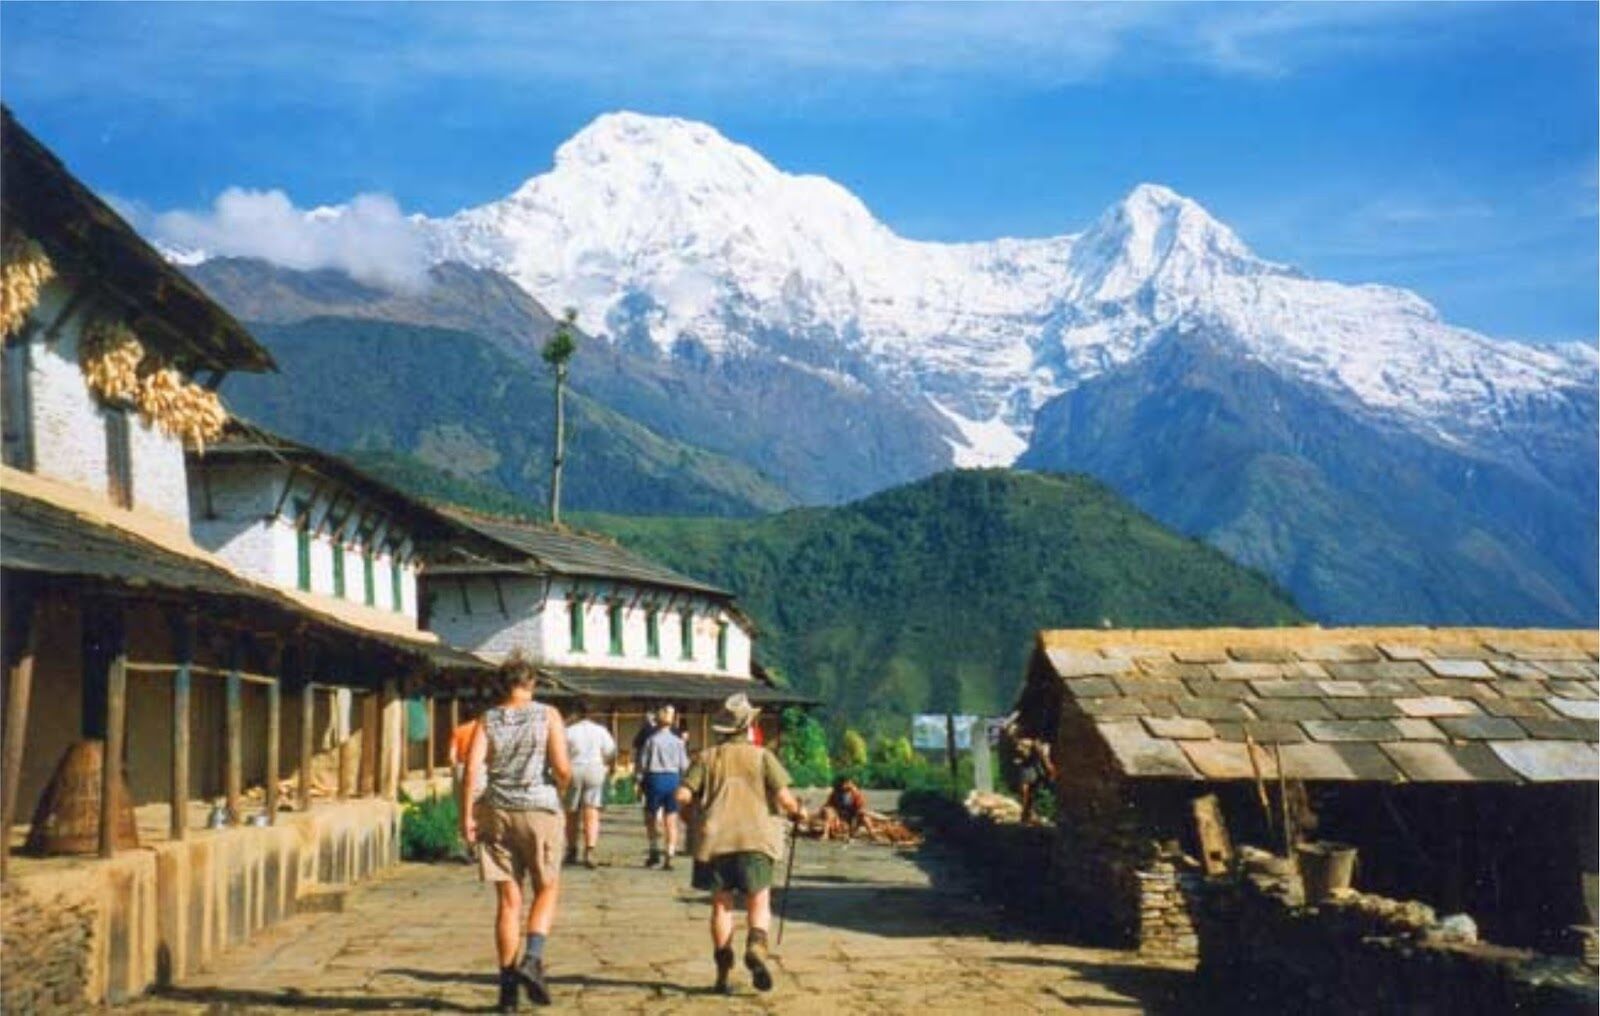 तेजी से बदल रहे हिमालय के पर्यावरण ने दिए खतरनाक संकेत, वैज्ञानिकों ने सूखे की जताई आशंका